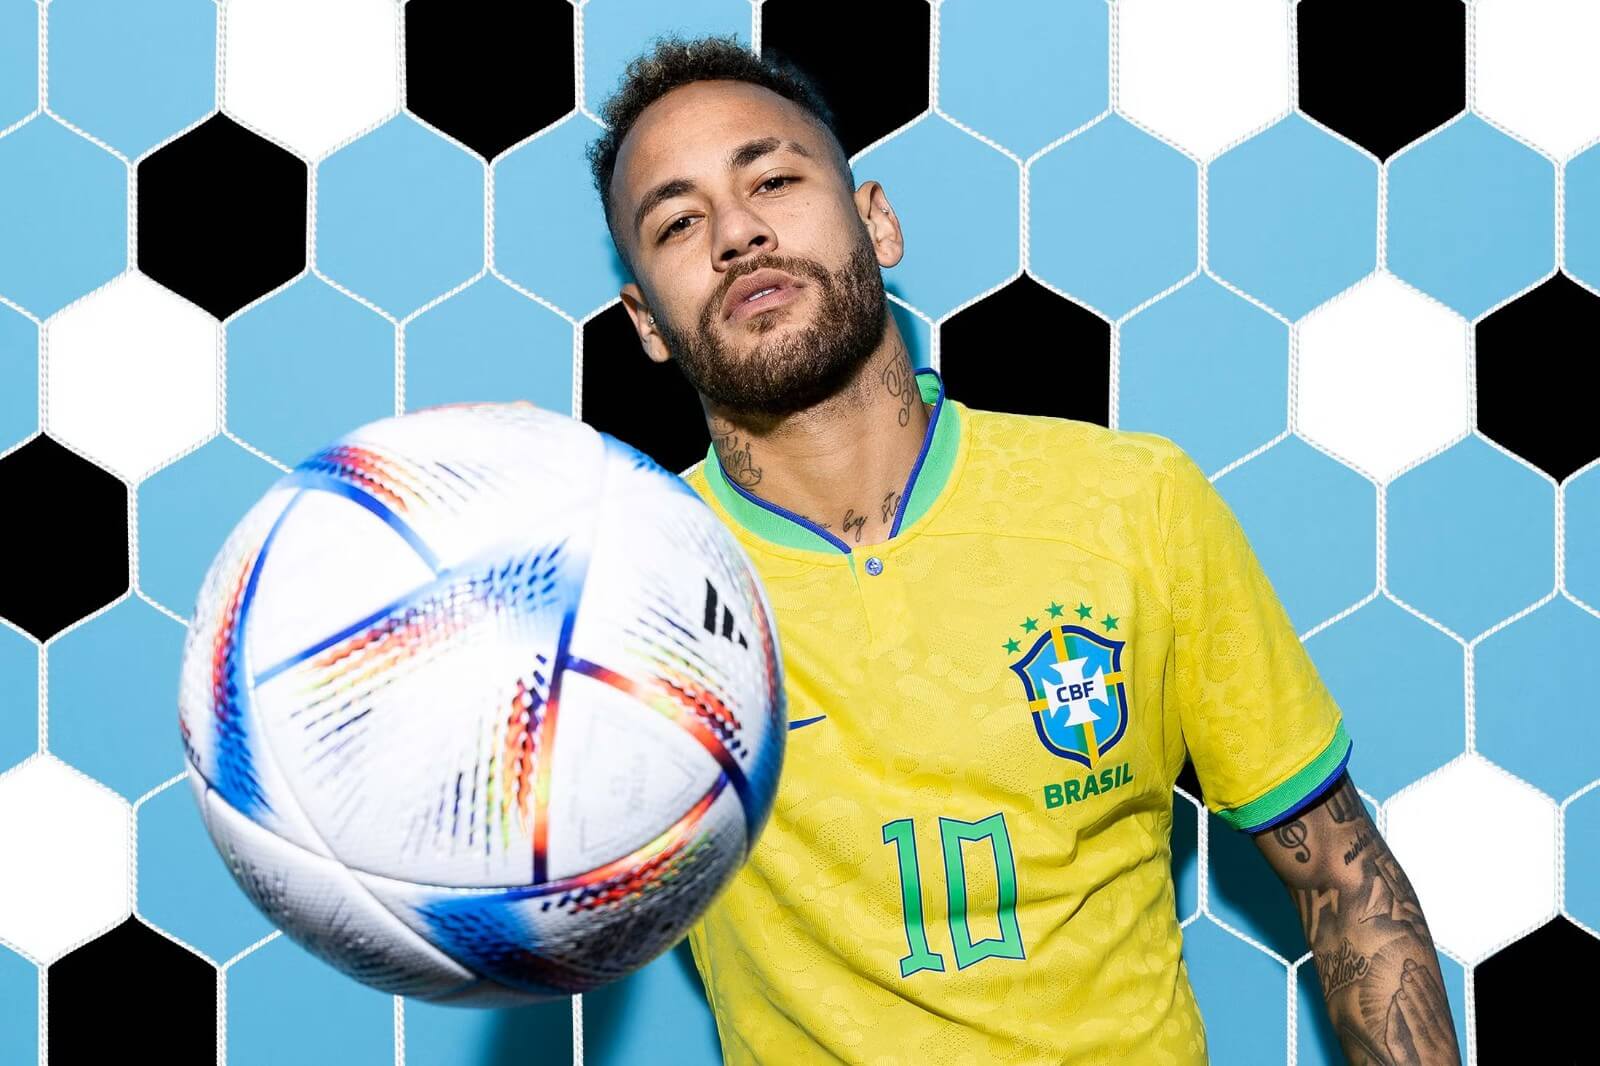 Neymar Brazil Jersey.jpg